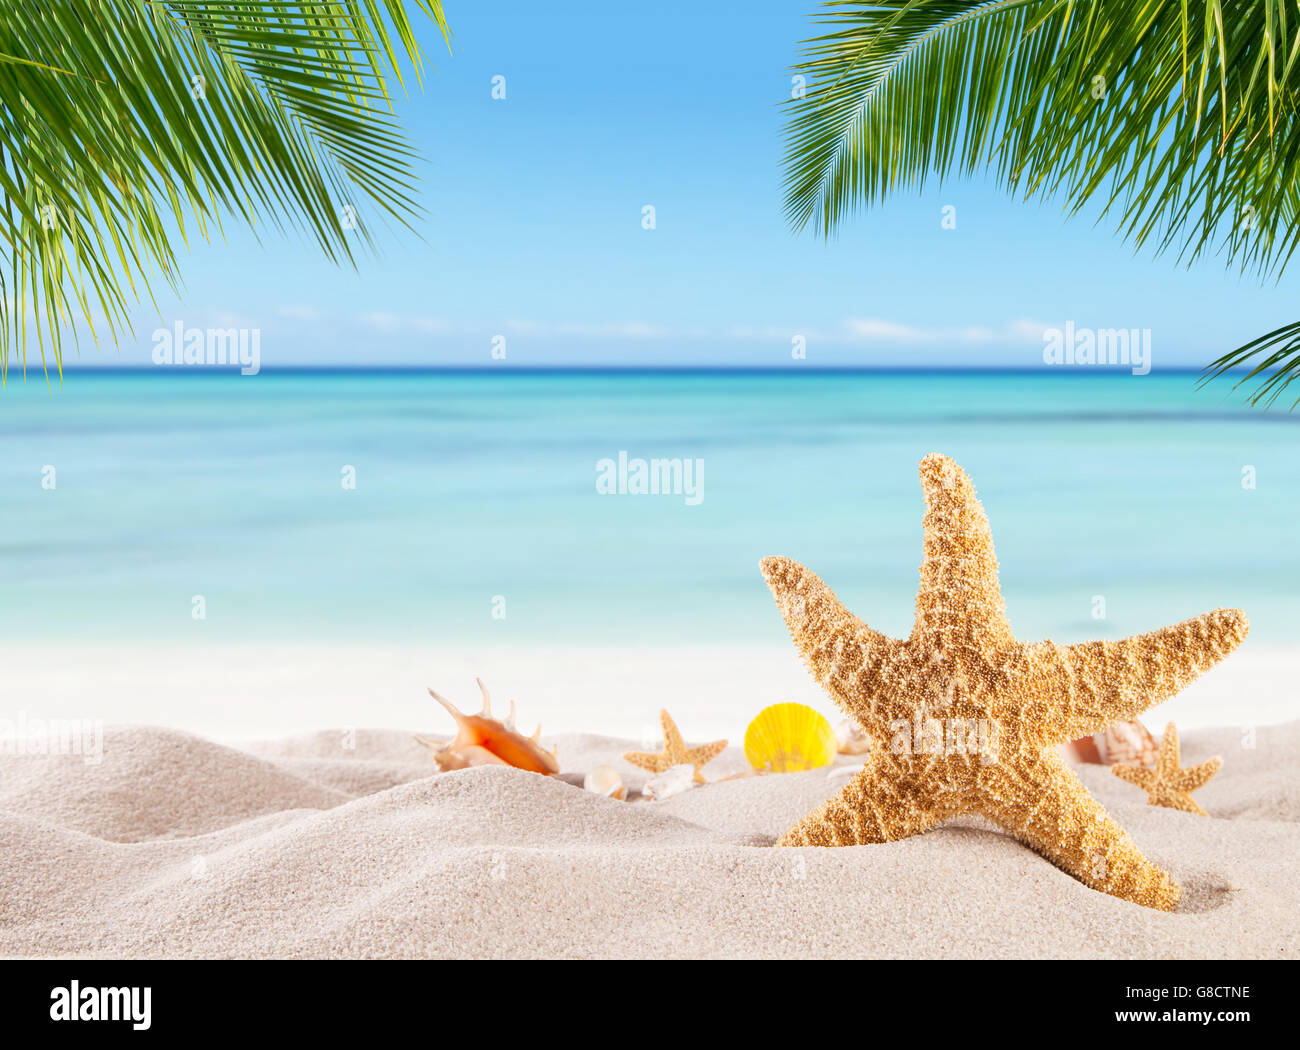 Tropischer Strand mit verschiedenen Muscheln im Sand, Exemplar für Text. Konzept der Erholung im Sommer Stockfoto